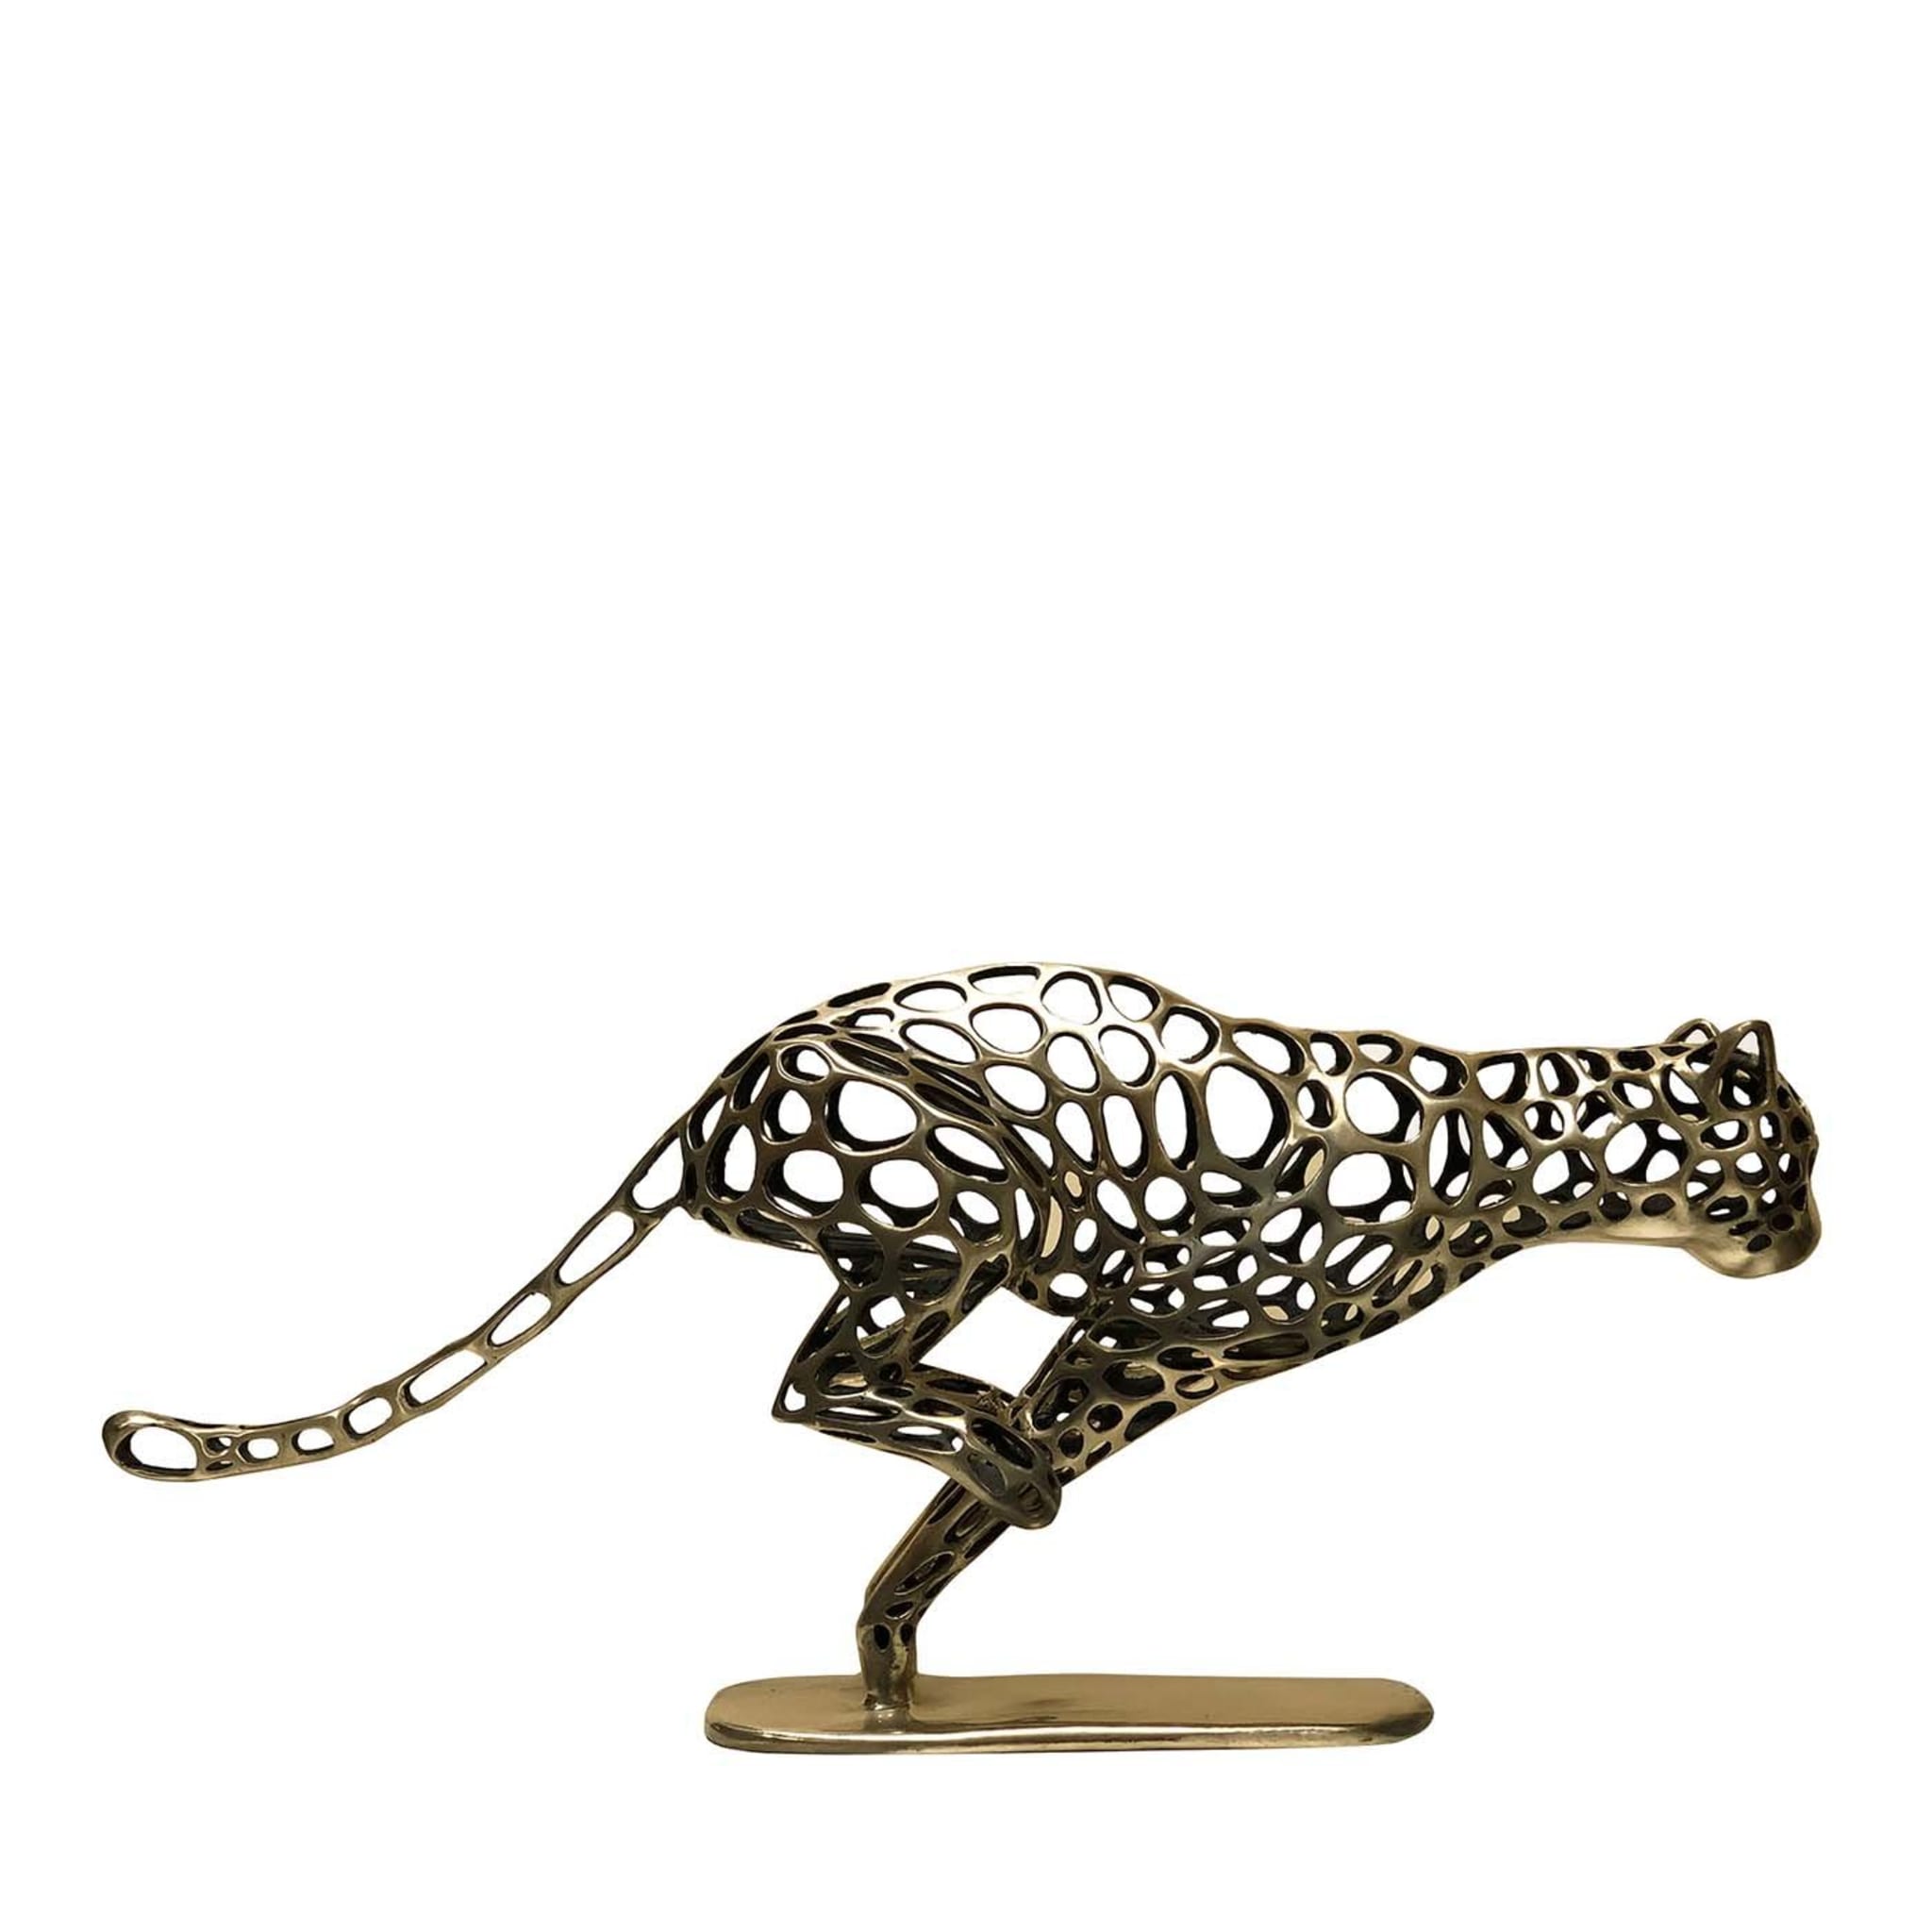 Running Cheetah Sculpture - Main view